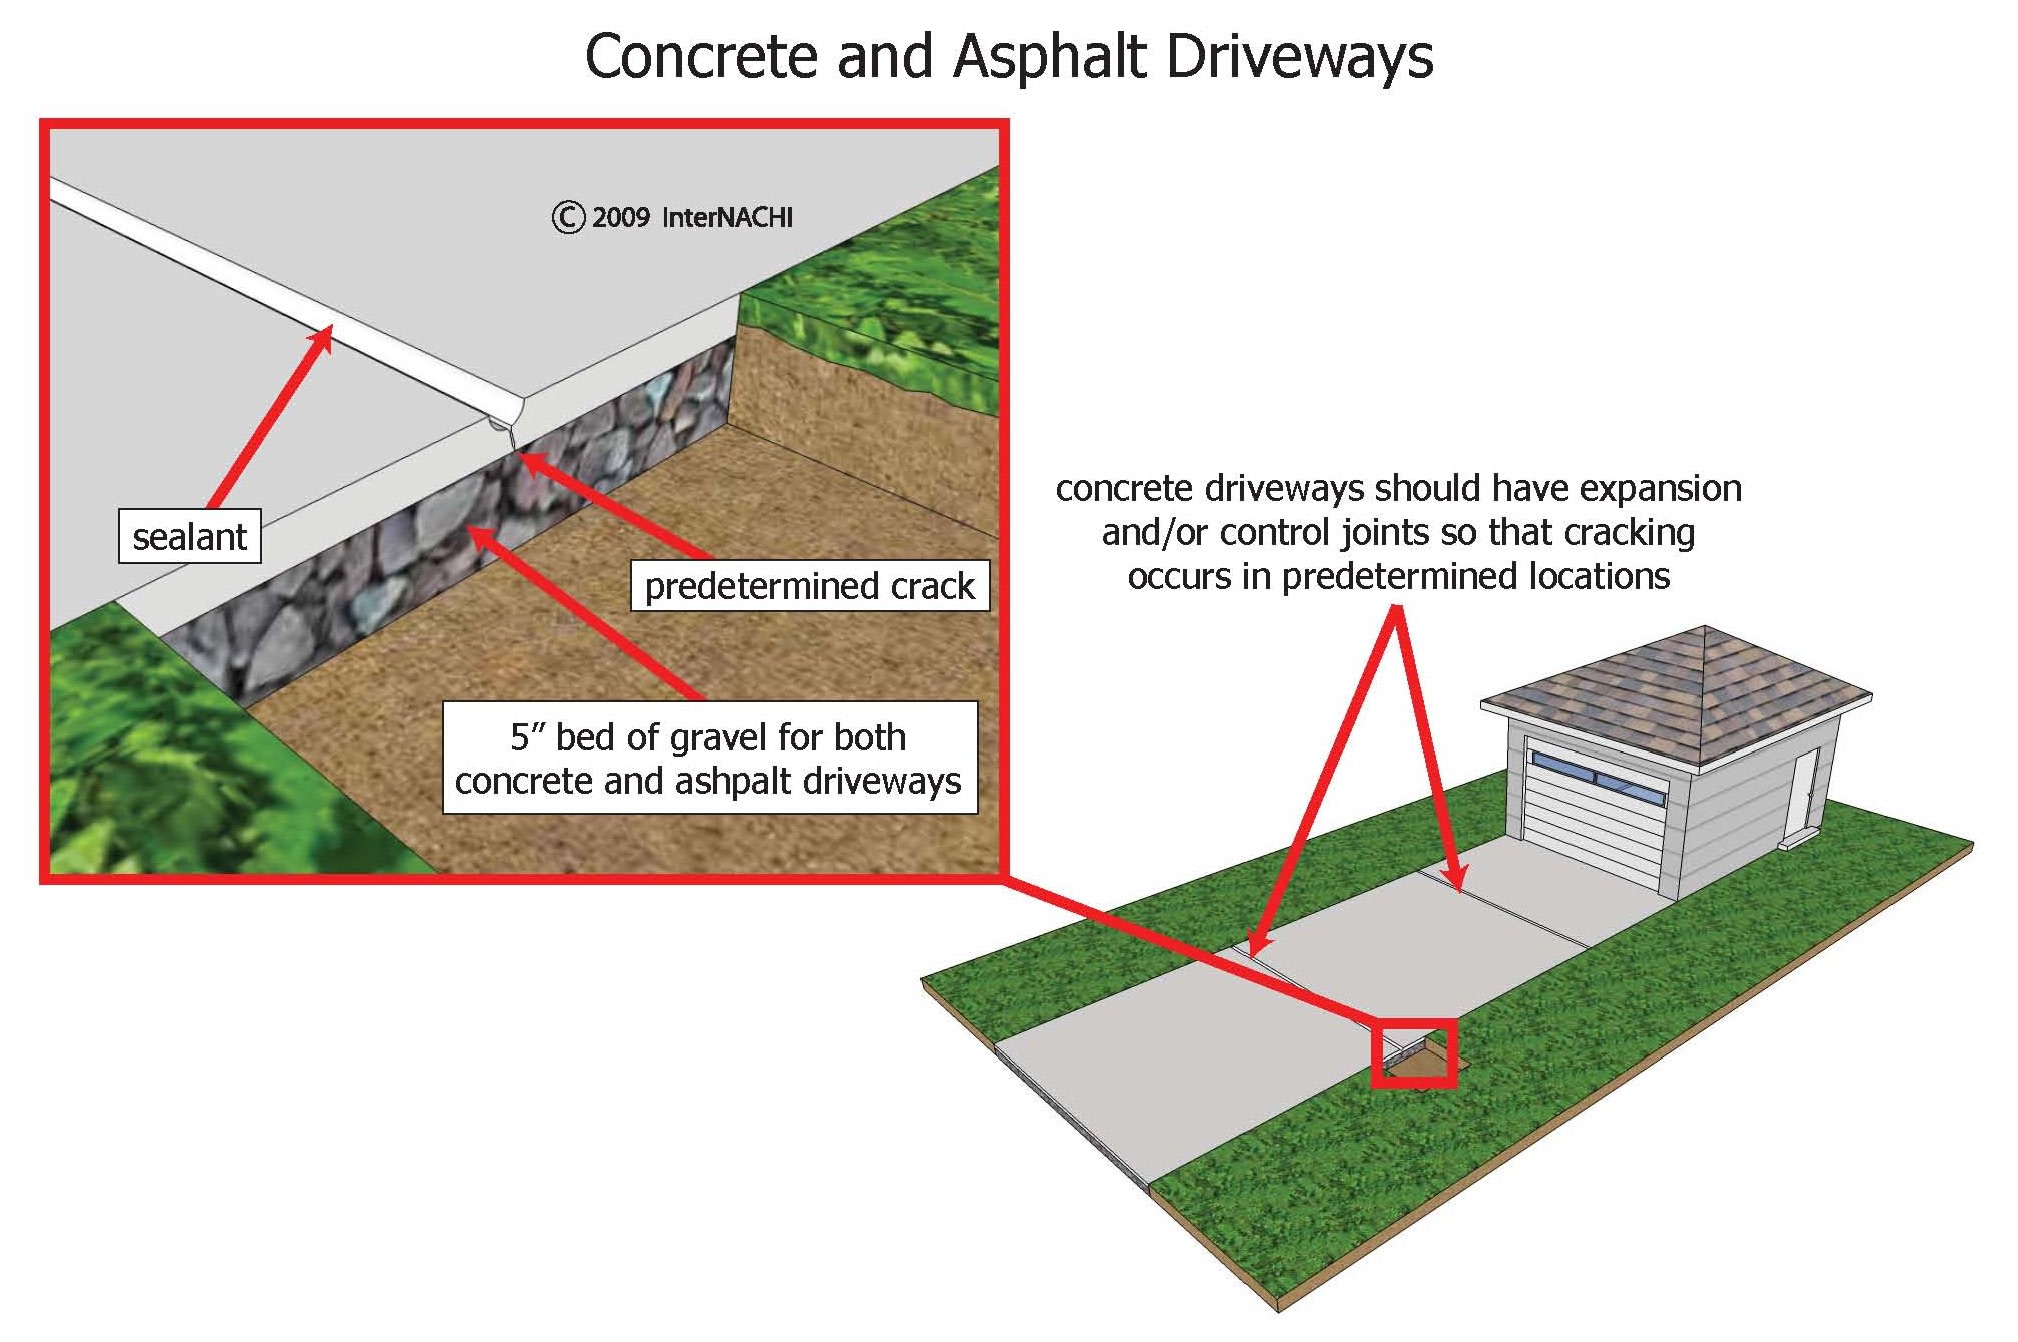 Concrete and asphalt driveways.